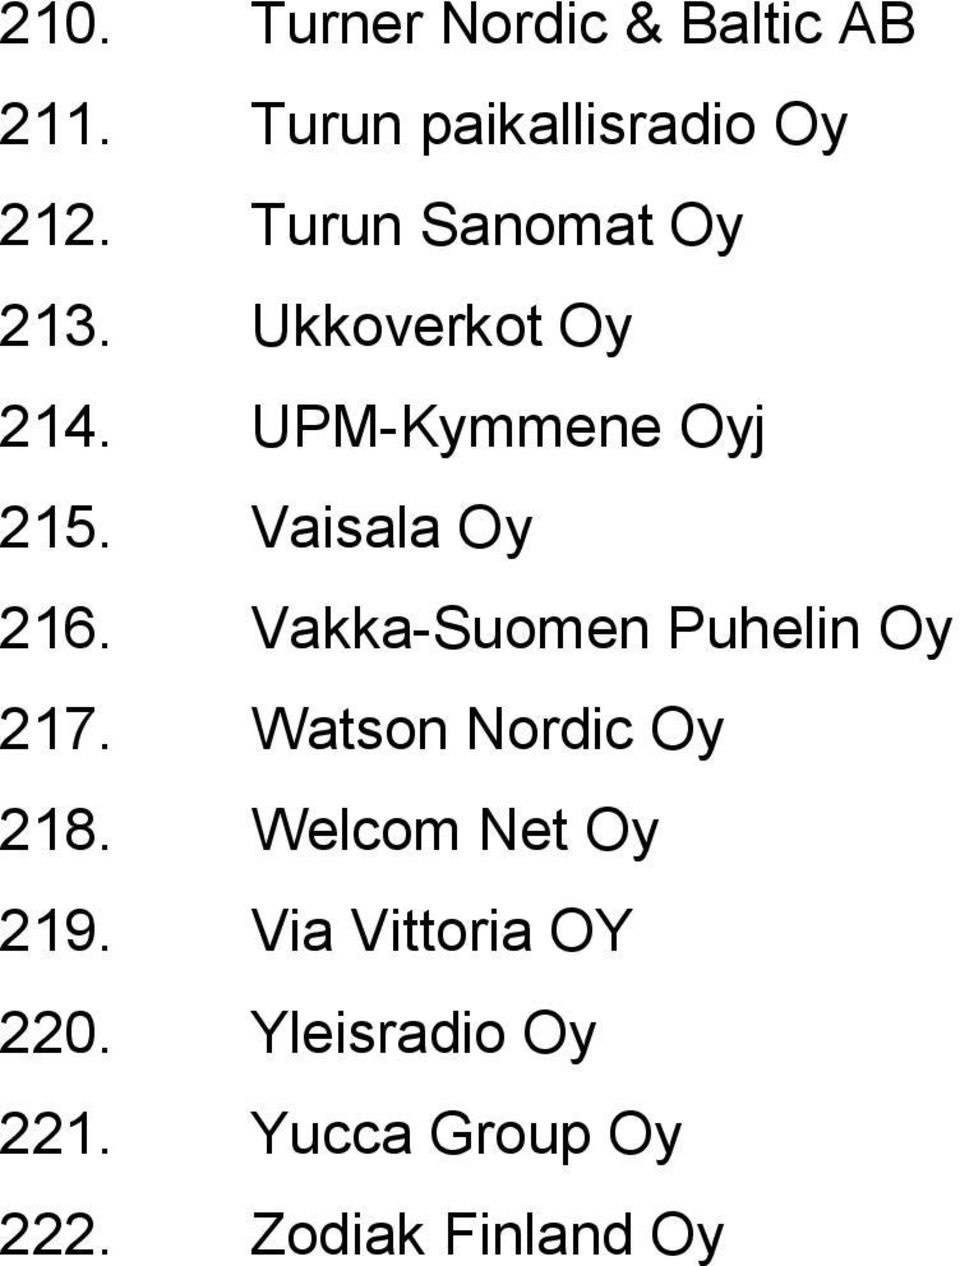 Vaisala Oy 216. Vakka-Suomen Puhelin Oy 217. Watson Nordic Oy 218.